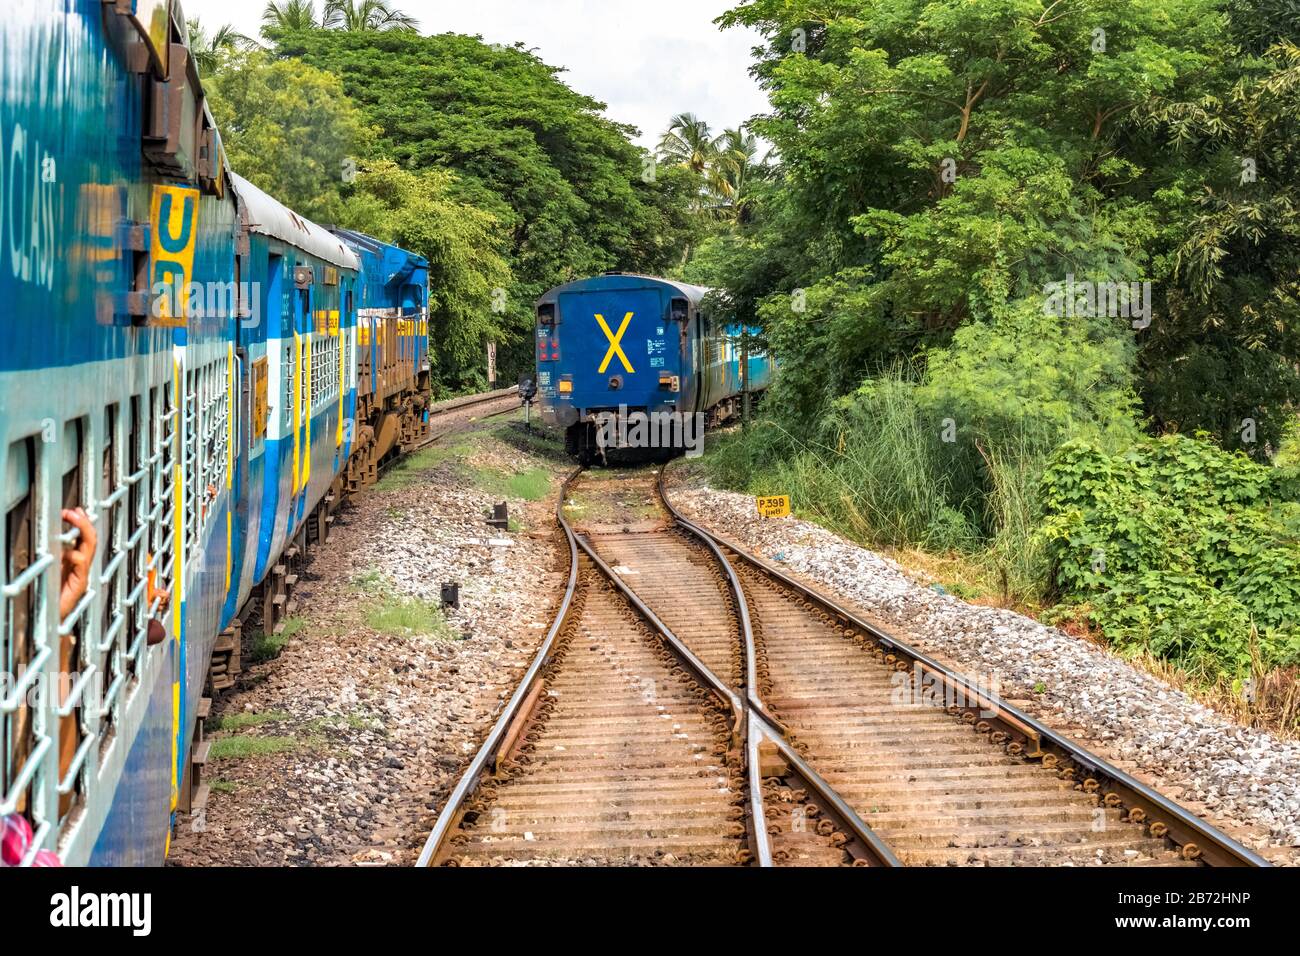 Treno lento in movimento delle Ferrovie indiane in partenza dall'incrocio e sorpasso di una fermata nel verde di Ghats occidentali.Concept of Travel, Journey. Foto Stock